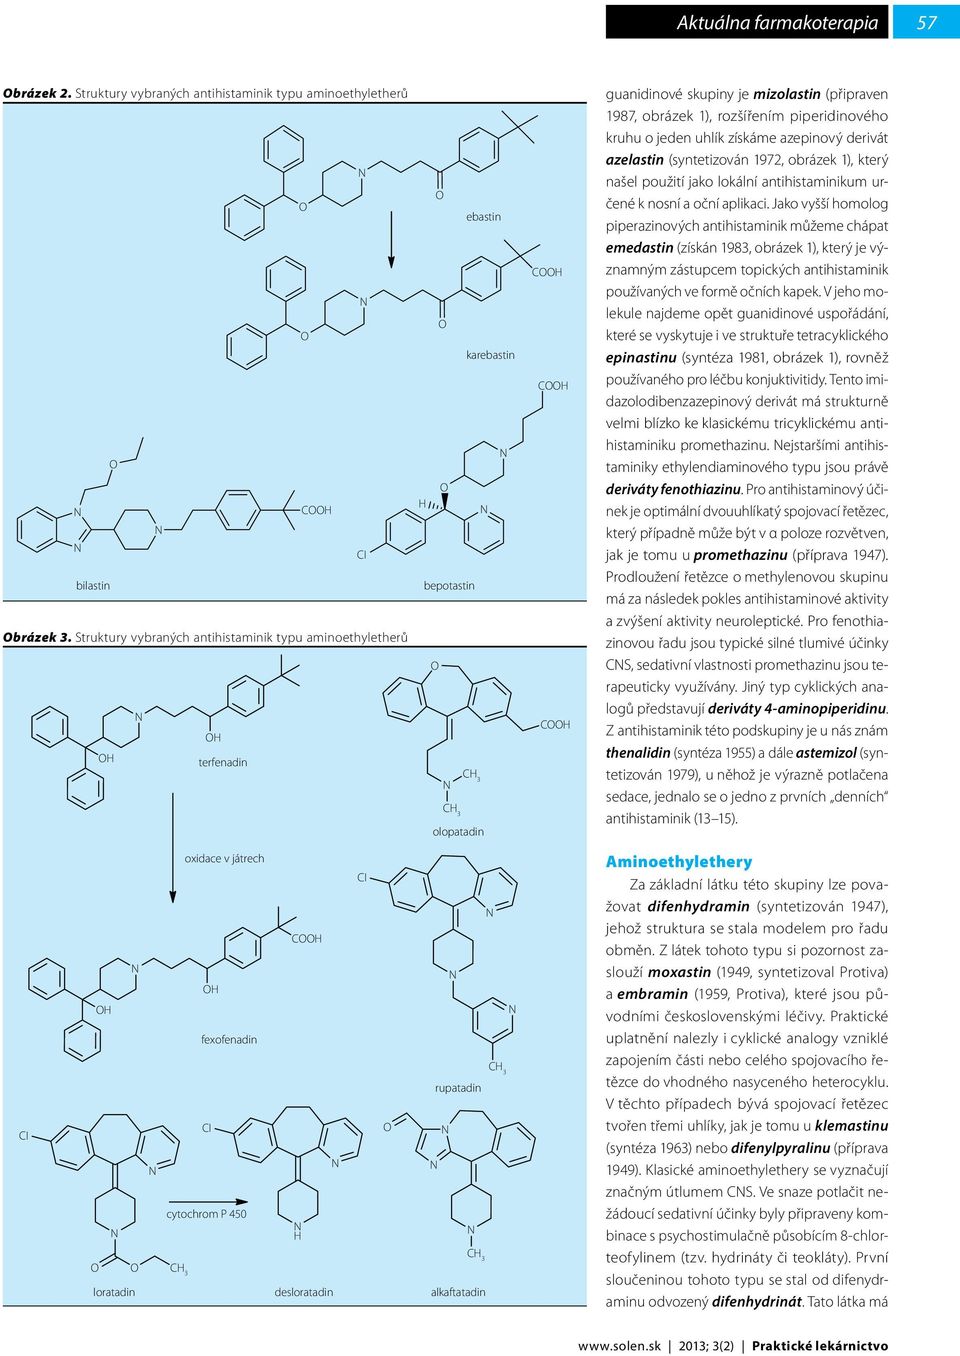 piperidinového kruhu o jeden uhlík získáme azepinový derivát azelastin (syntetizován 1972, obrázek 1), který našel použití jako lokální antihistaminikum určené k nosní a oční aplikaci.